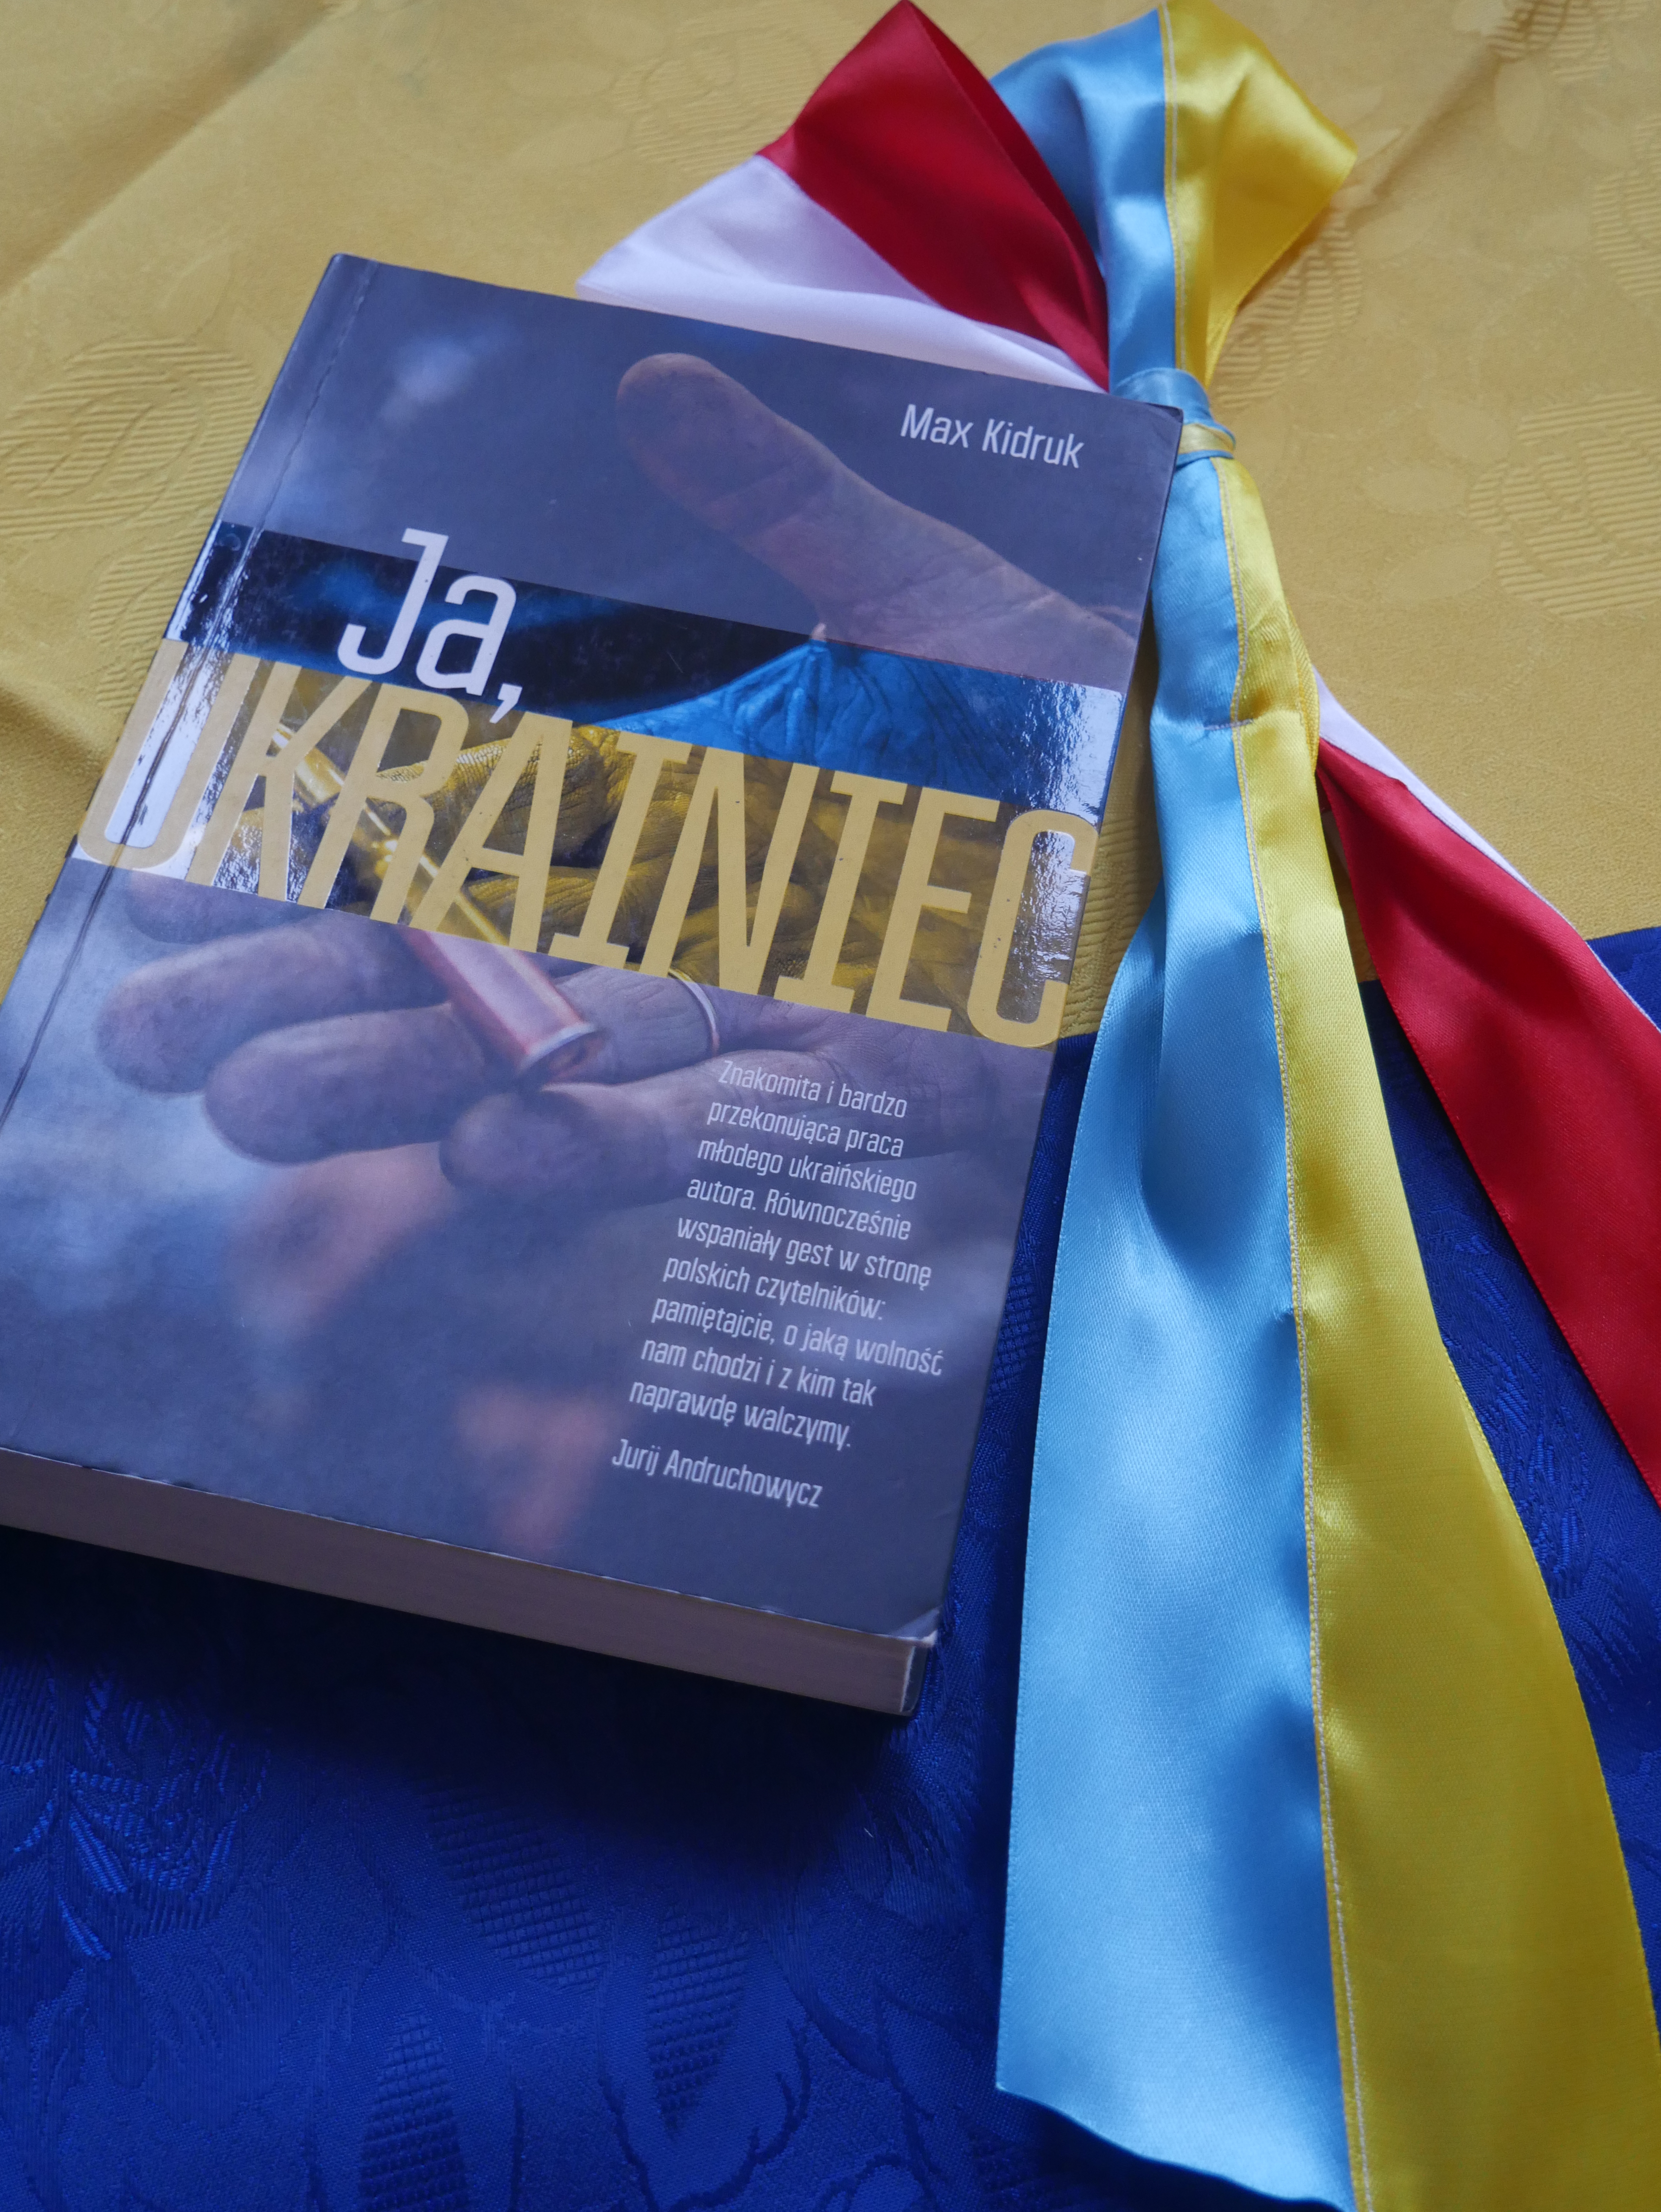 zdjęcie przedstawia książkę leżącą na żółto-niebieskim tle, obok książki leżą kokardy narodowe Polski i Ukrainy